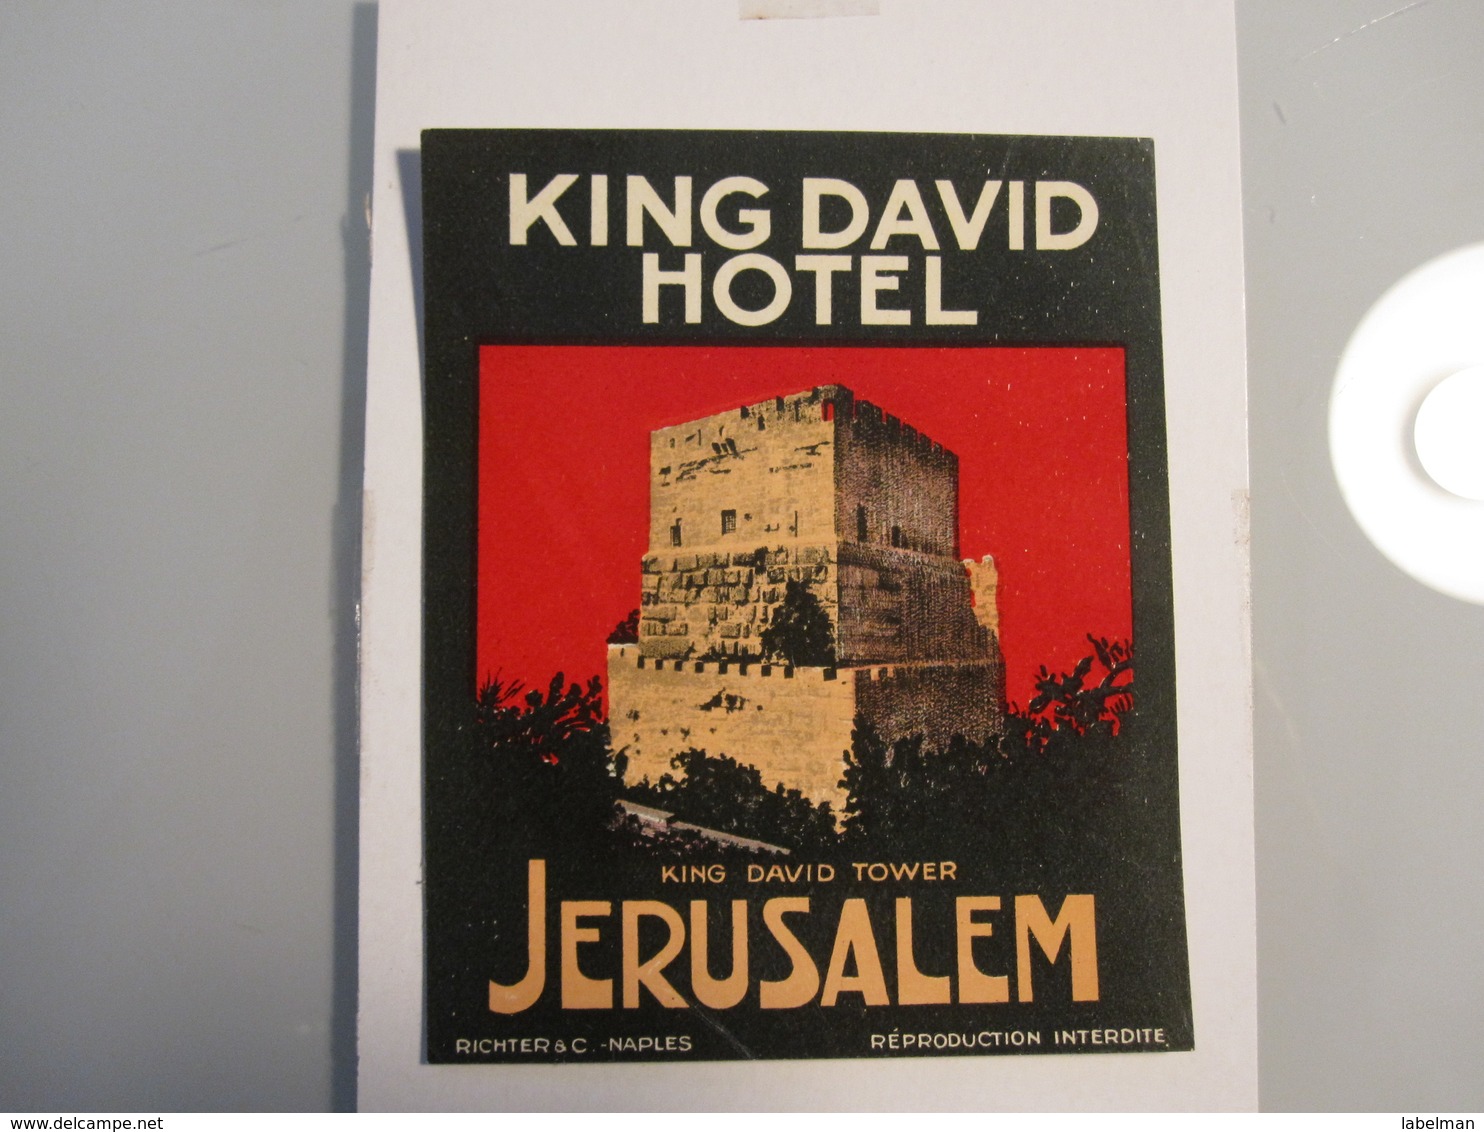 HOTEL MOTEL PENSION KING DAVID JERUSALEM PALESTINE ISRAEL TAG STICKER DECAL LUGGAGE LABEL ETIQUETTE AUFKLEBER - Hotel Labels